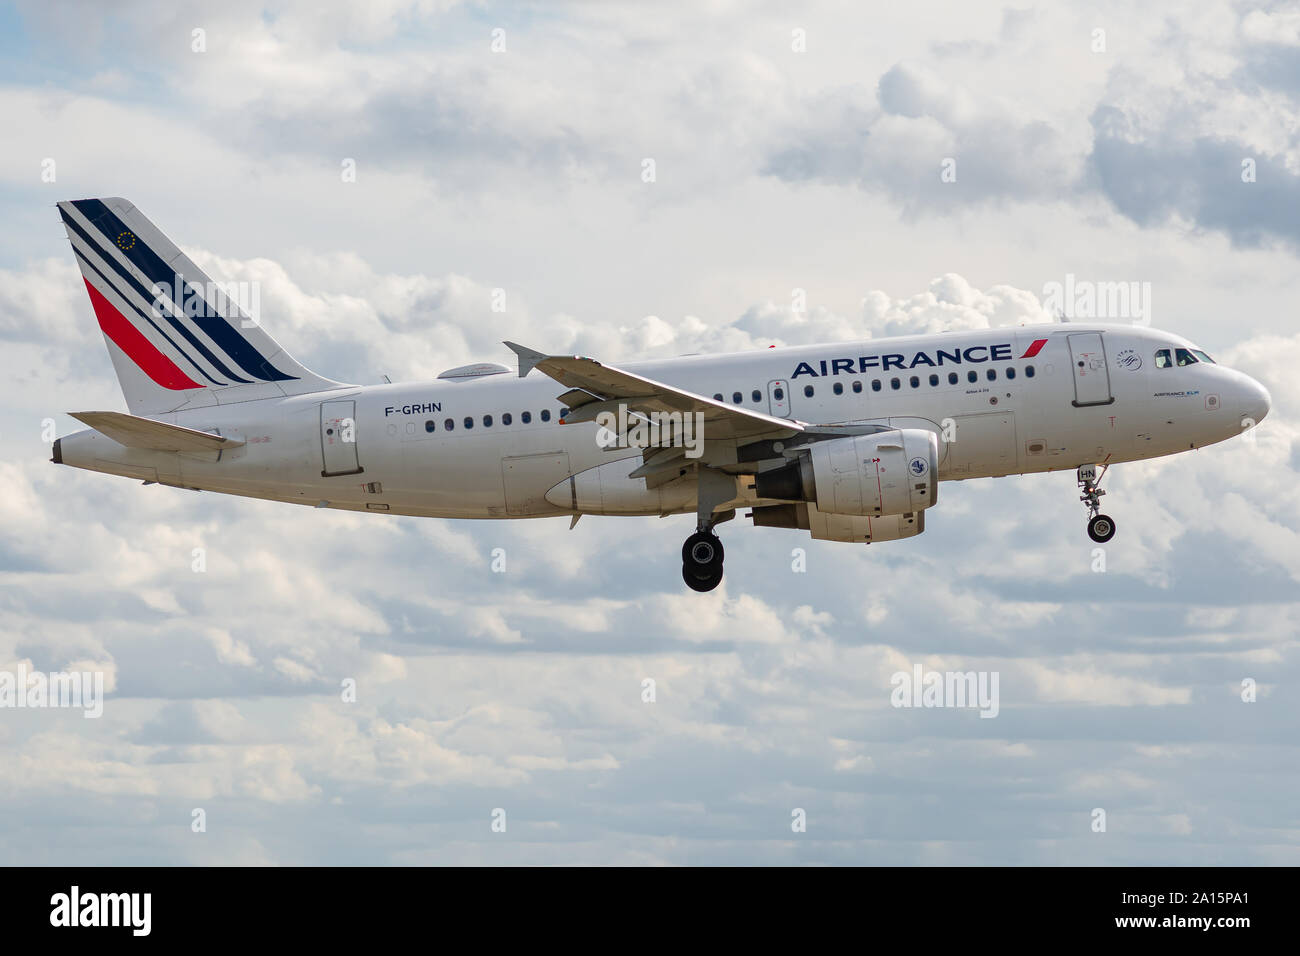 F-GRHN, 23 septembre 2019, l'Airbus A319-111-1267 atterrissage sur l'aéroport de Roissy, Paris à la fin du vol Air France AF1263 de Stockholm Banque D'Images